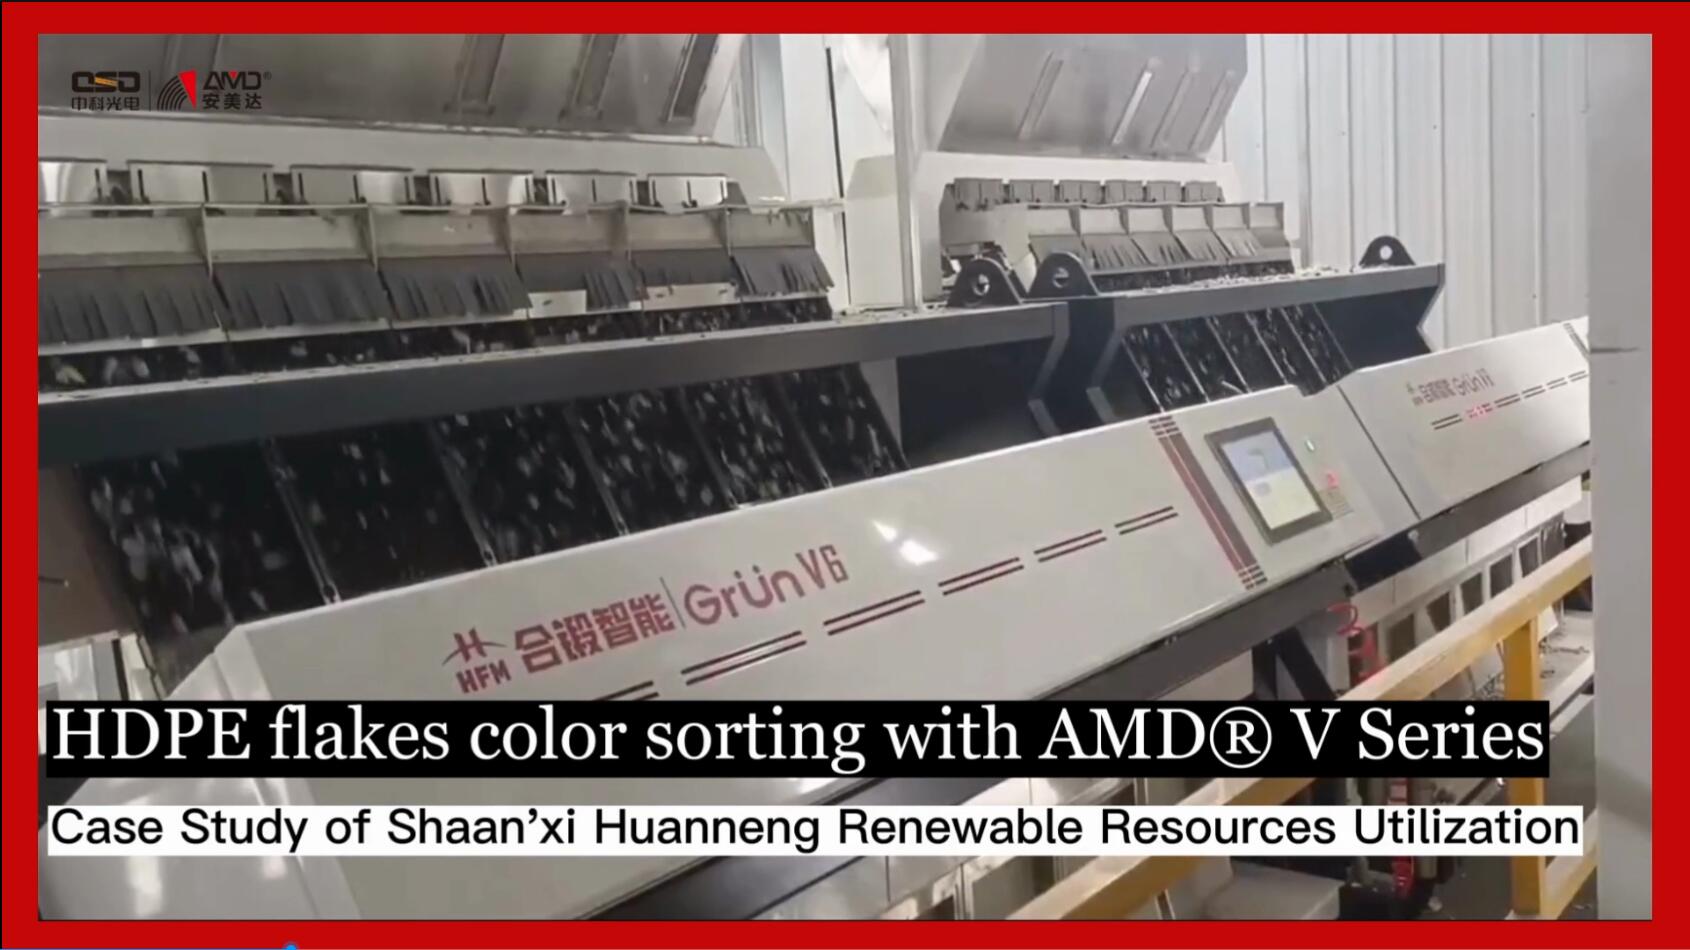 رقائق HDPE لفرز الألوان باستخدام فاصل السلسلة AMD® V.
